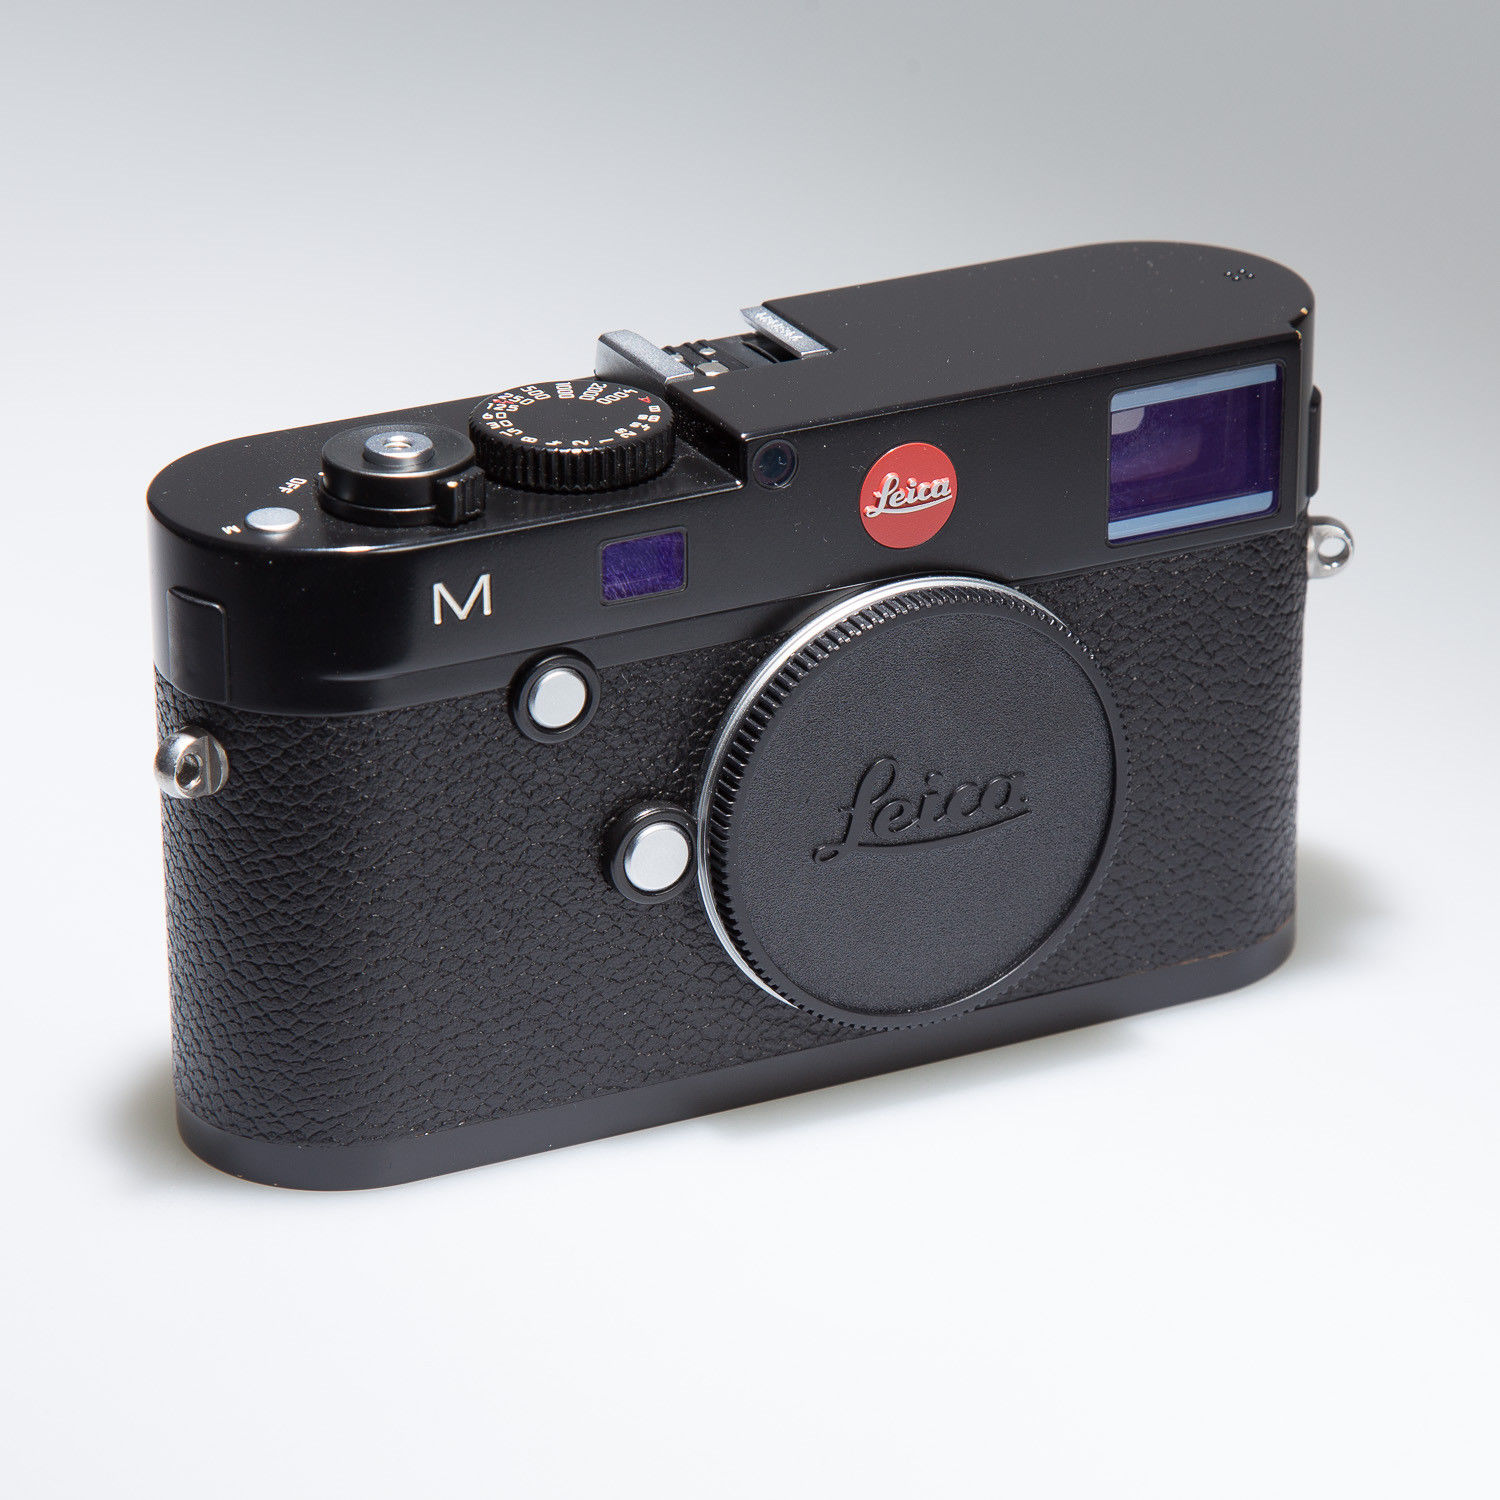 Leica M (Typ 240) 24.0 MP Digitalkamera - Schwarz; TOP Zustand